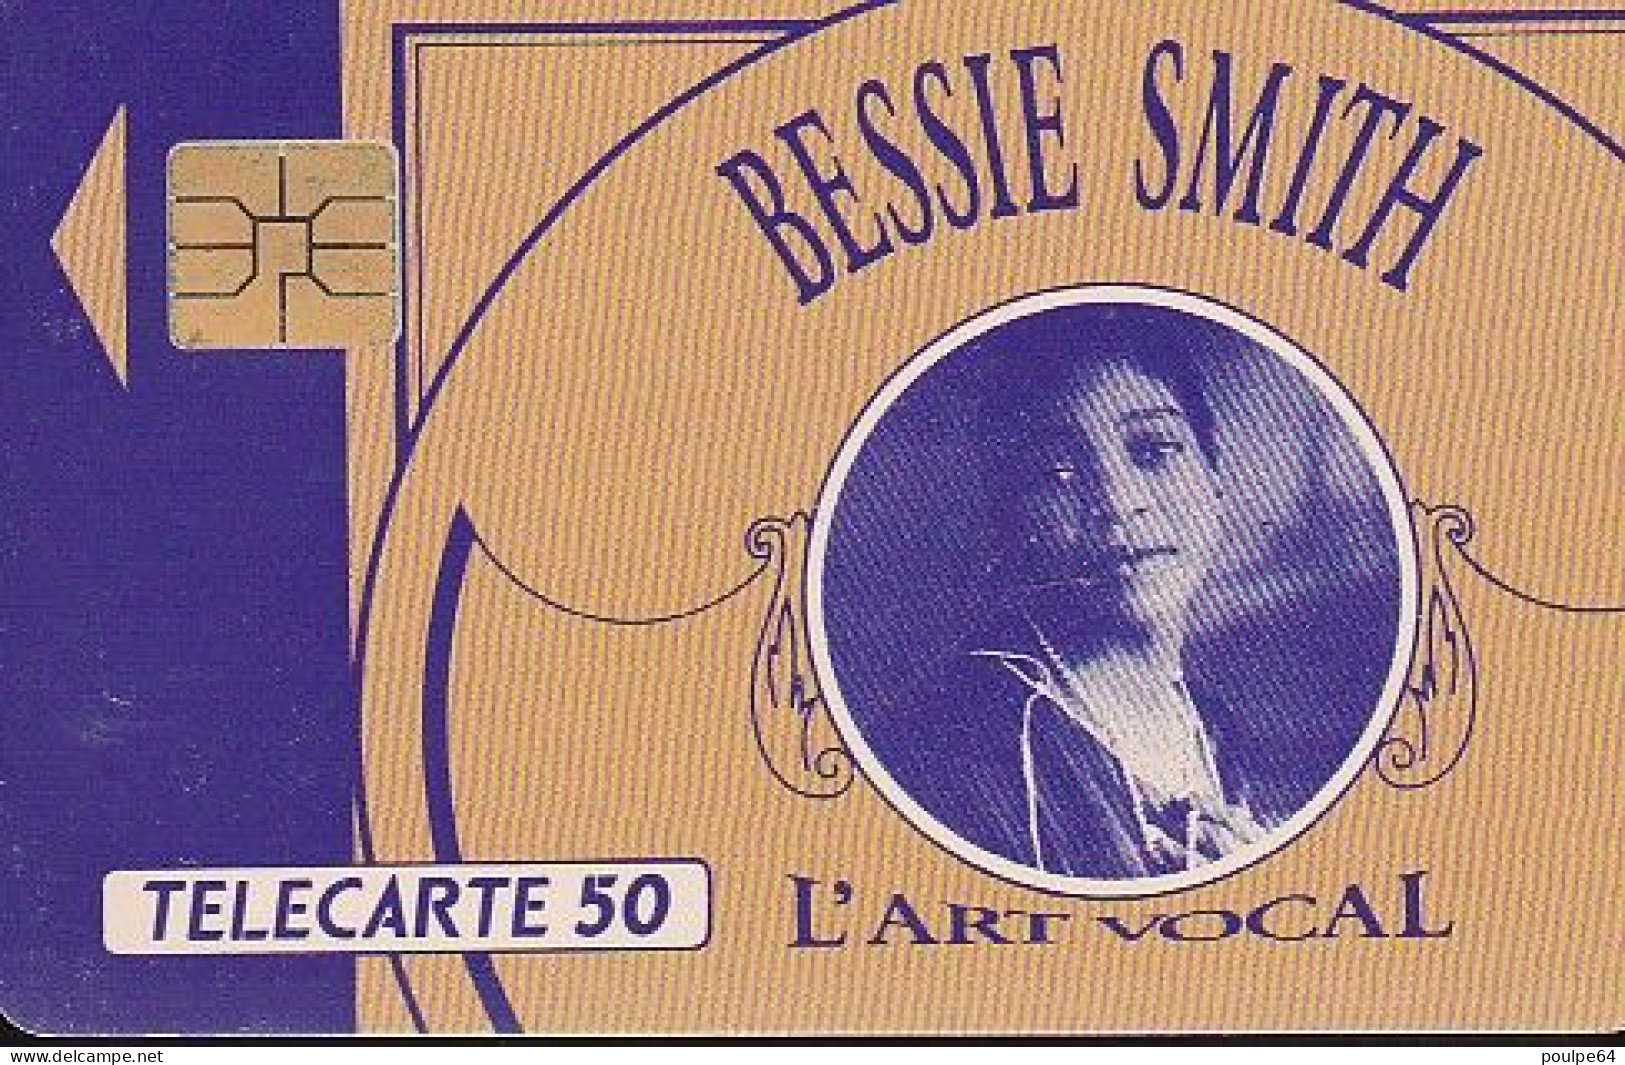 F231 - 10/1991 - BESSIE SMITH - 50 SO3 - 1991